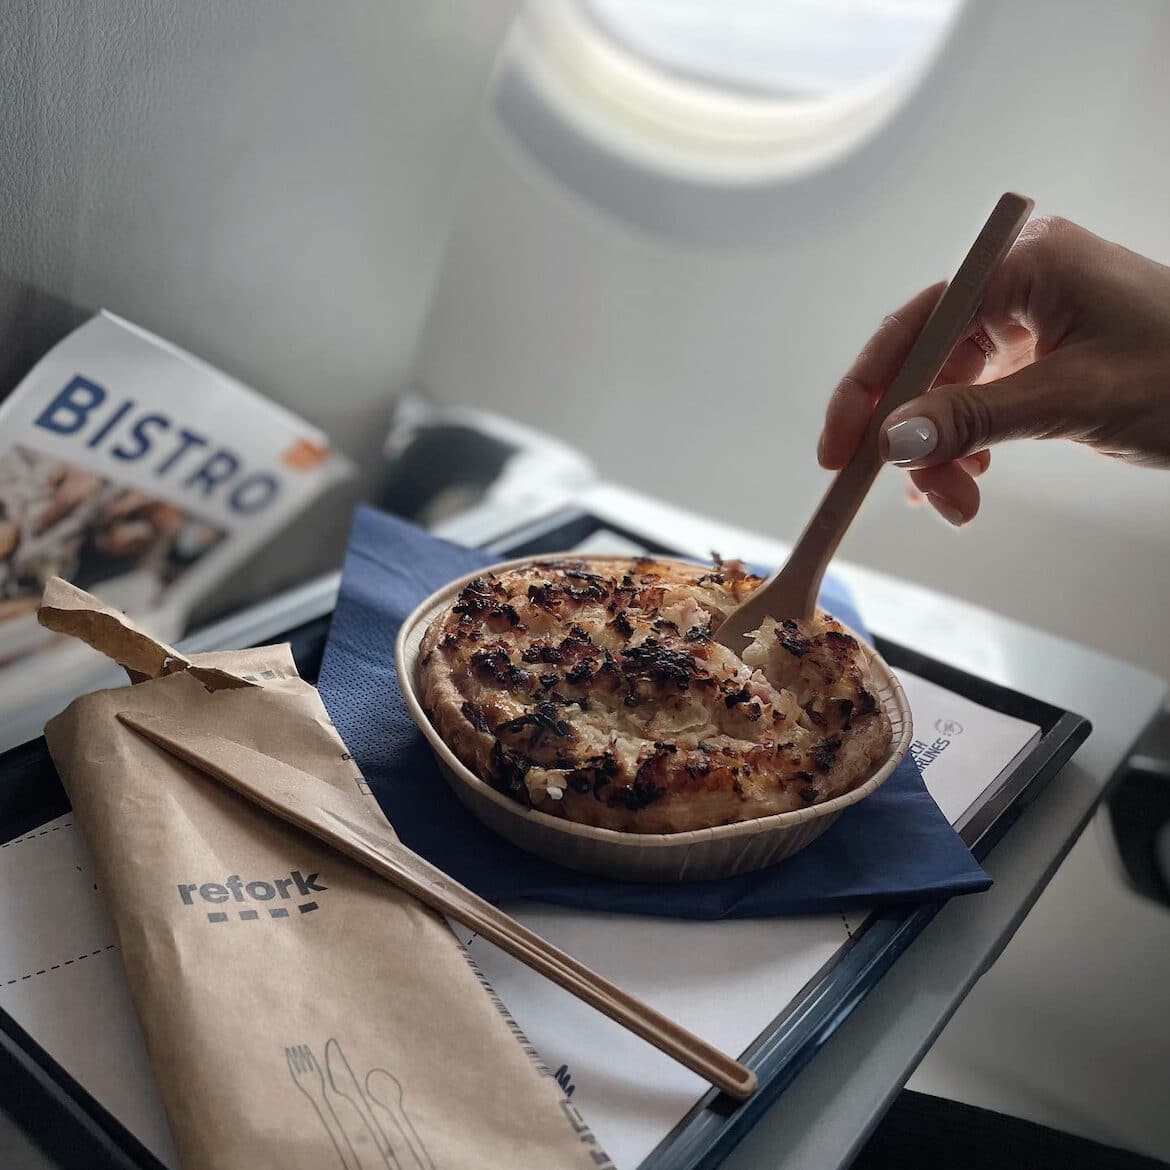 Refork Besteck auf einem Tablett neben Kartoffelpüreekuchen. Blick aus einem Flugzeug. 